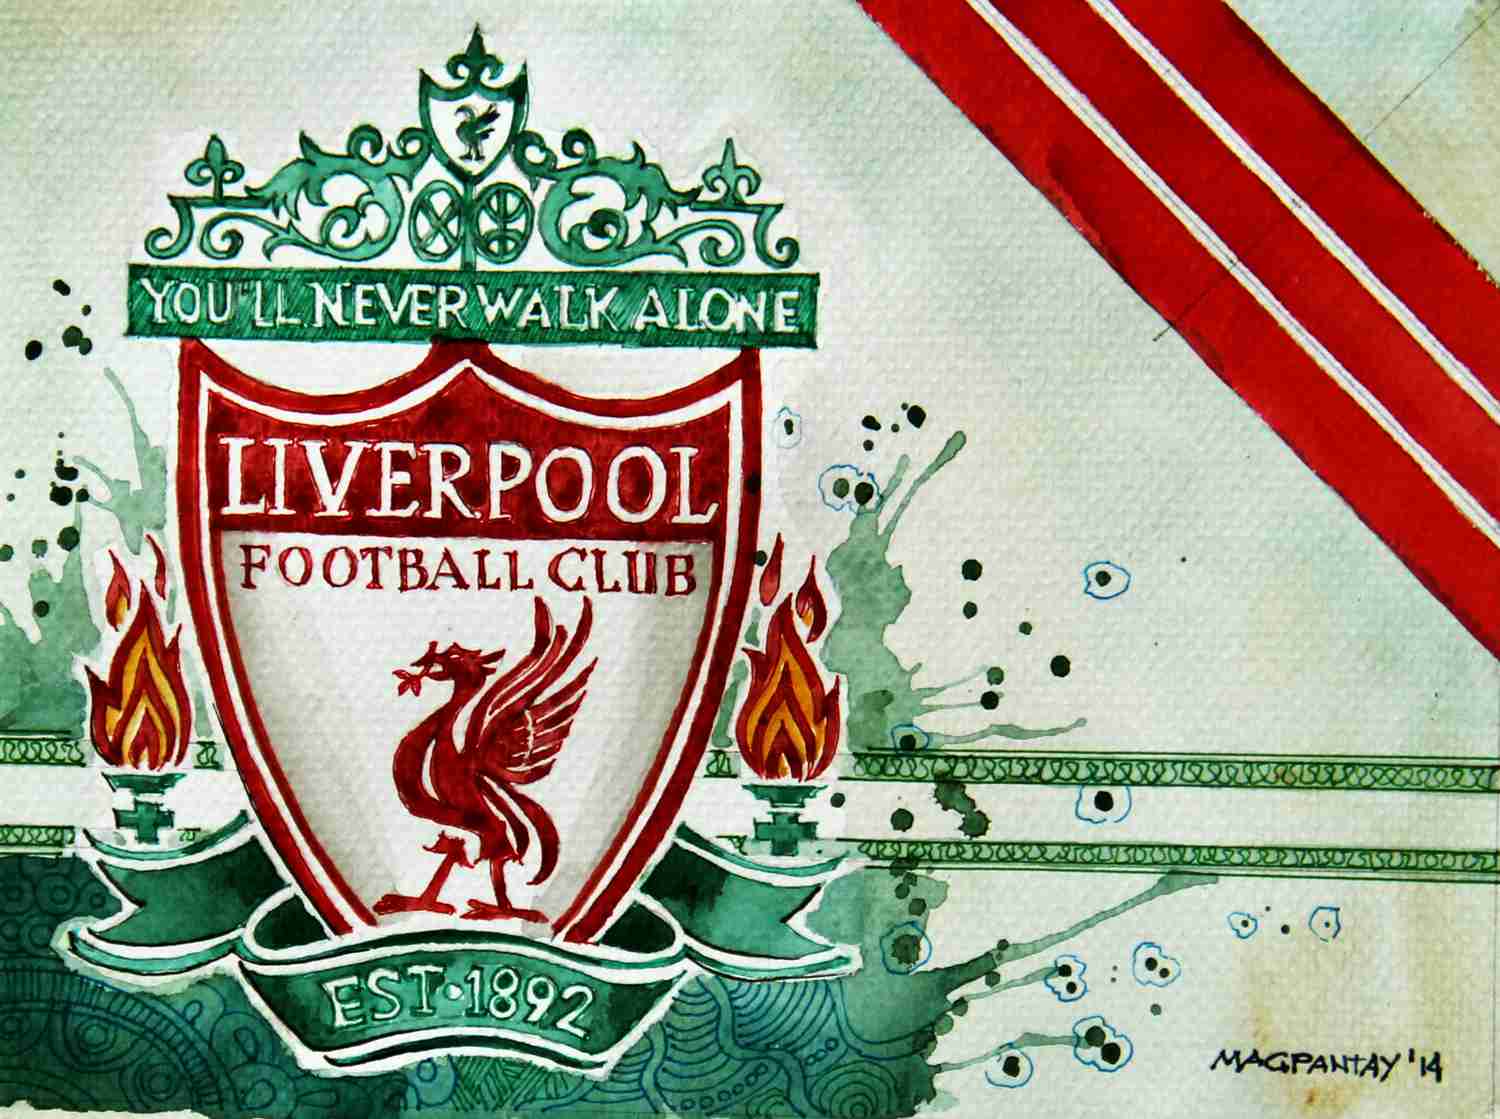 Der Rekordmann: Virgil van Dijk wechselt zum Liverpool FC